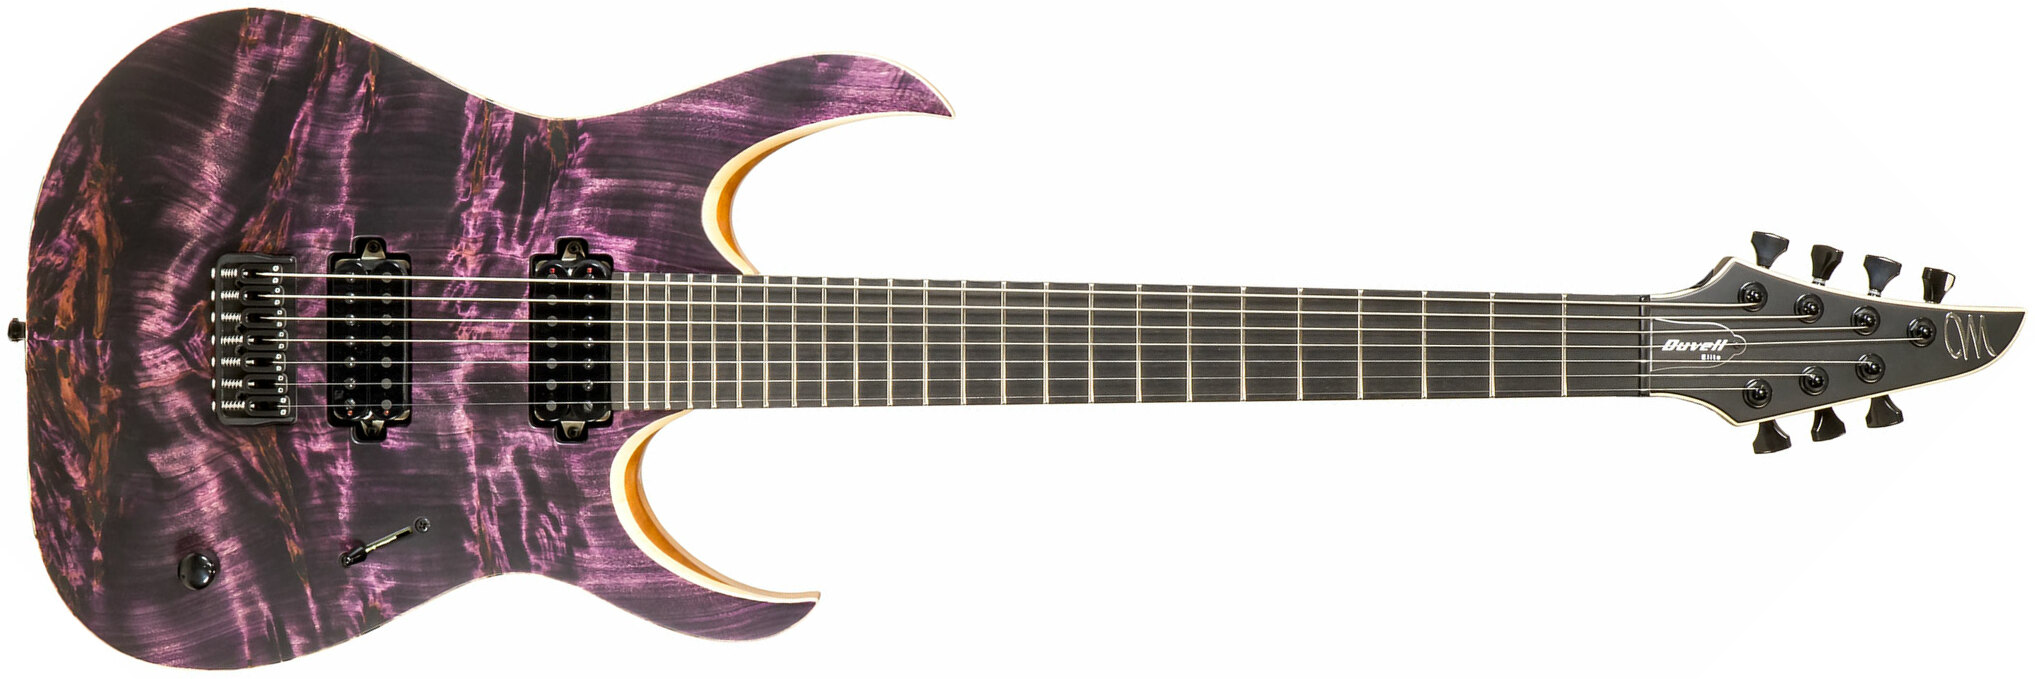 Mayones Guitars Duvell Elite 7c 2h Seymour Duncan Ht Eb #df2009194 - Dirty Purple - Guitare Électrique 7 Cordes - Main picture